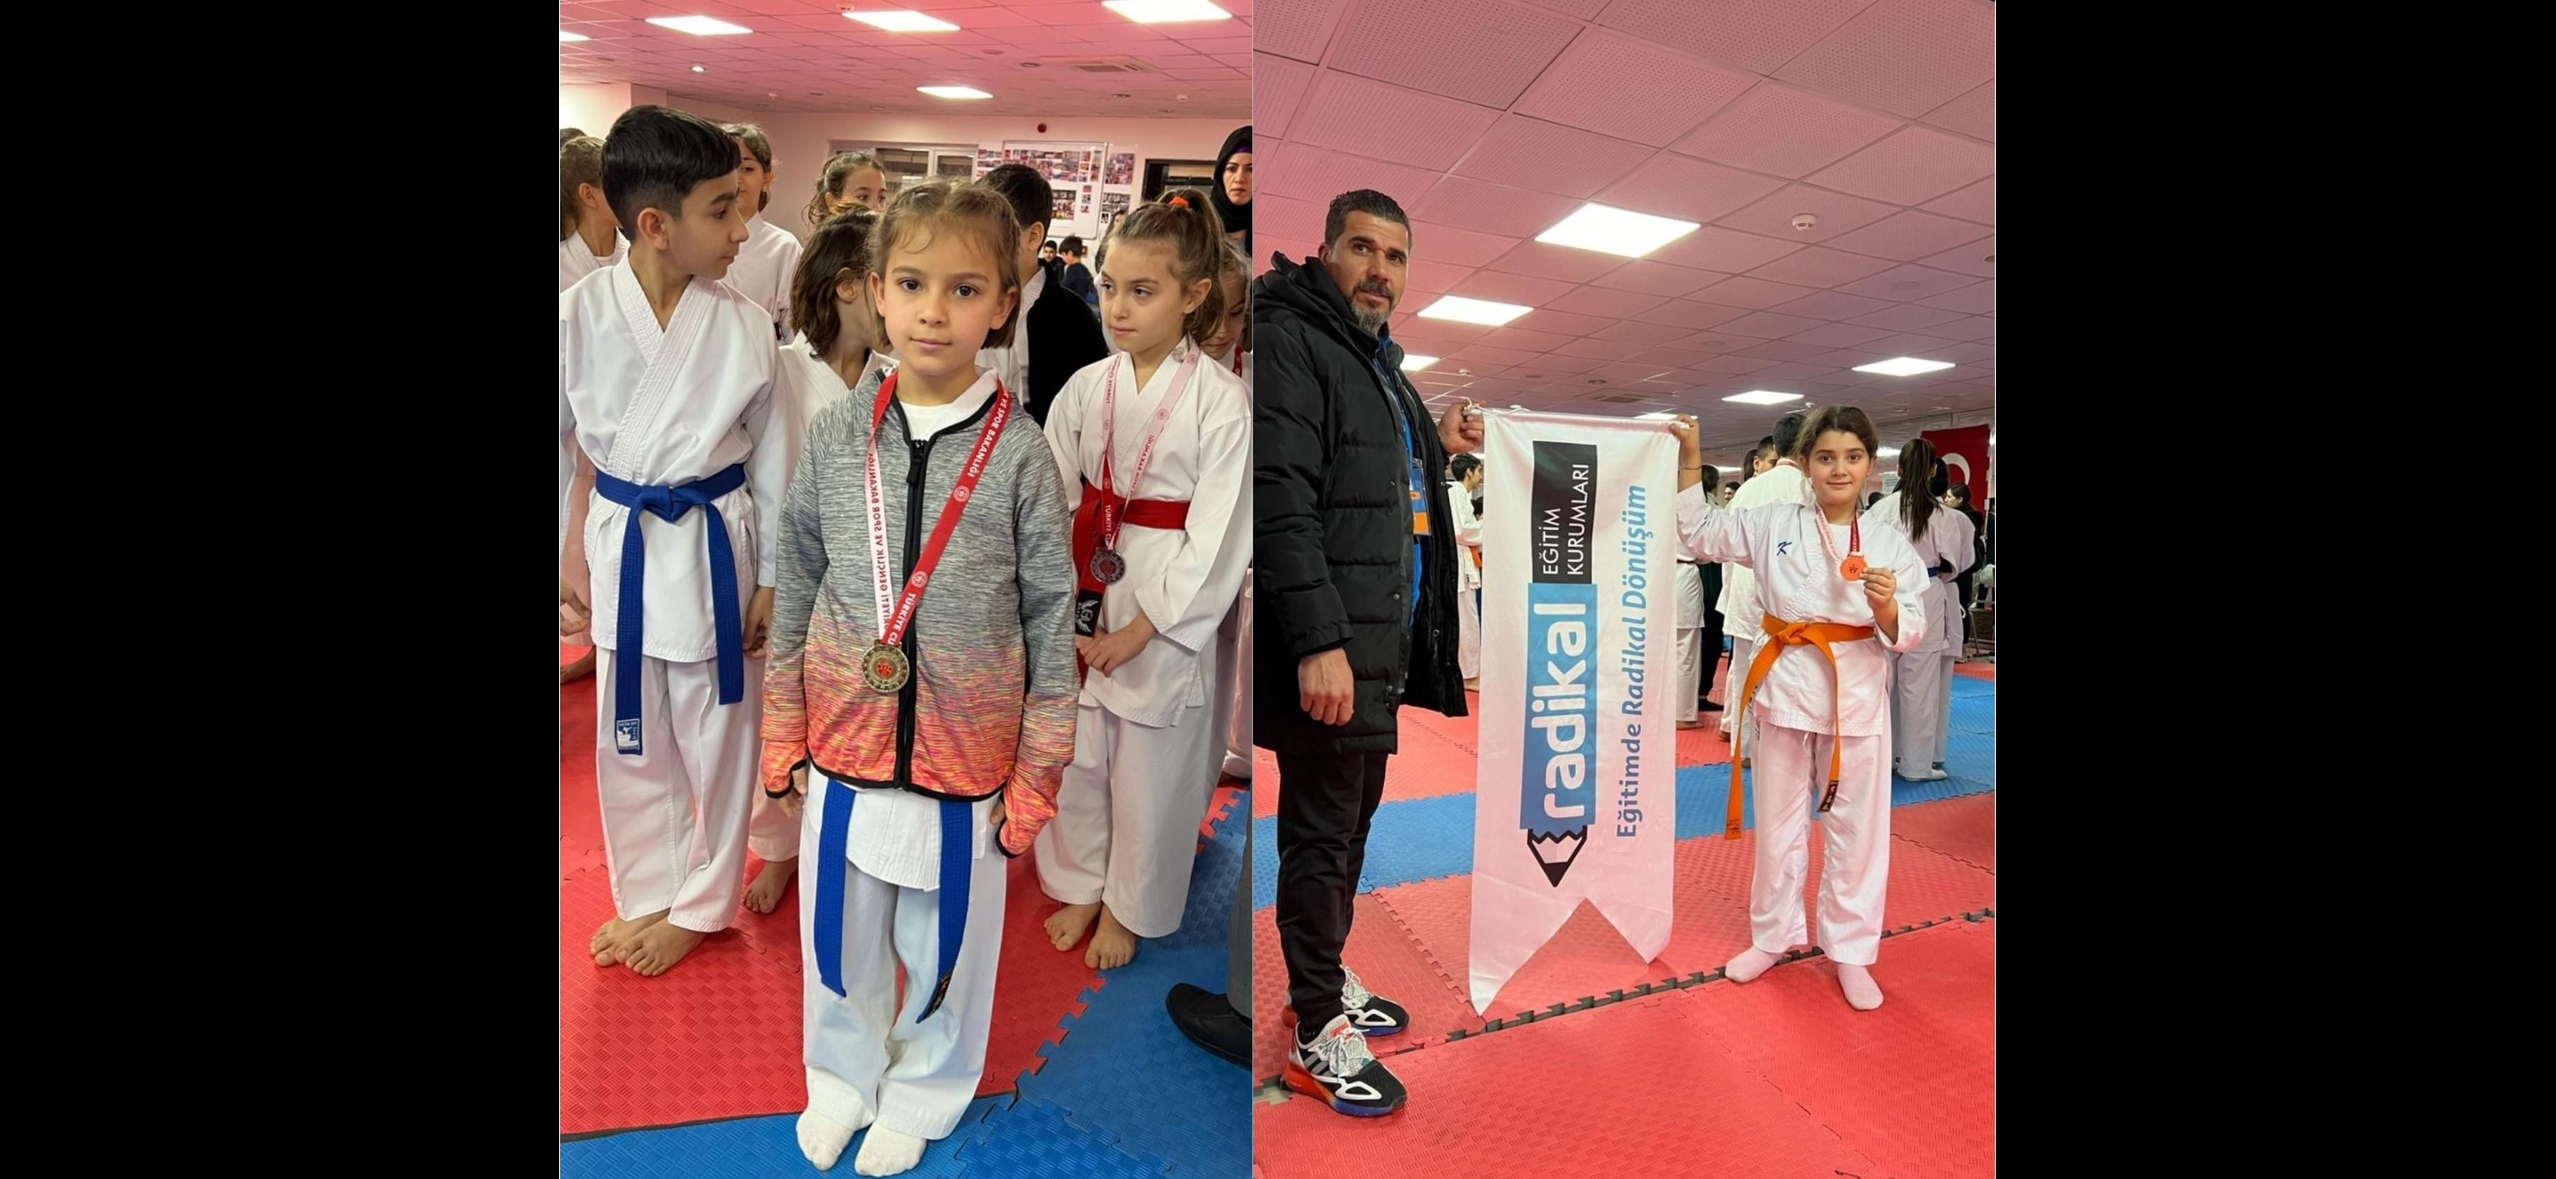 Diyarbakır’da Karate il seçmeleri yapıldı